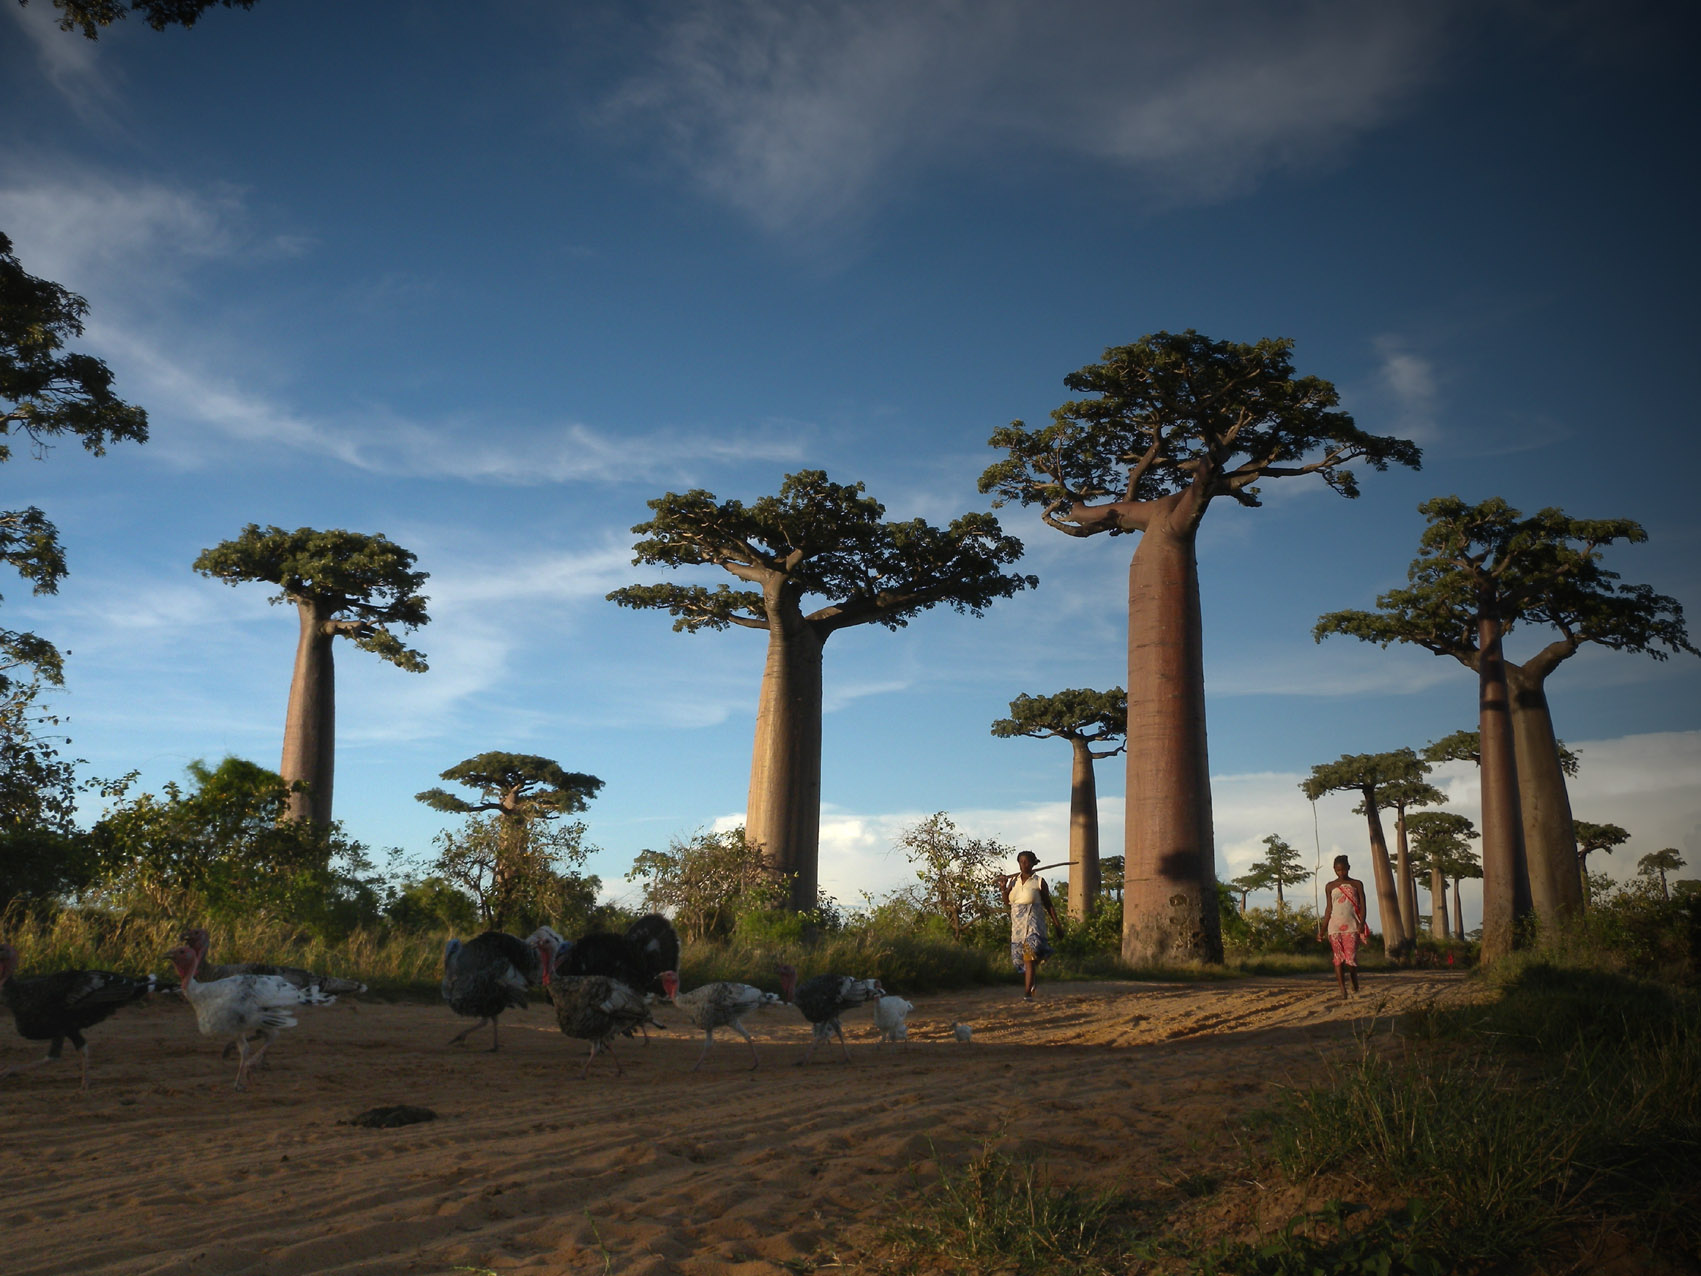 Madagaskar reisinformatie voor jouw vakantie